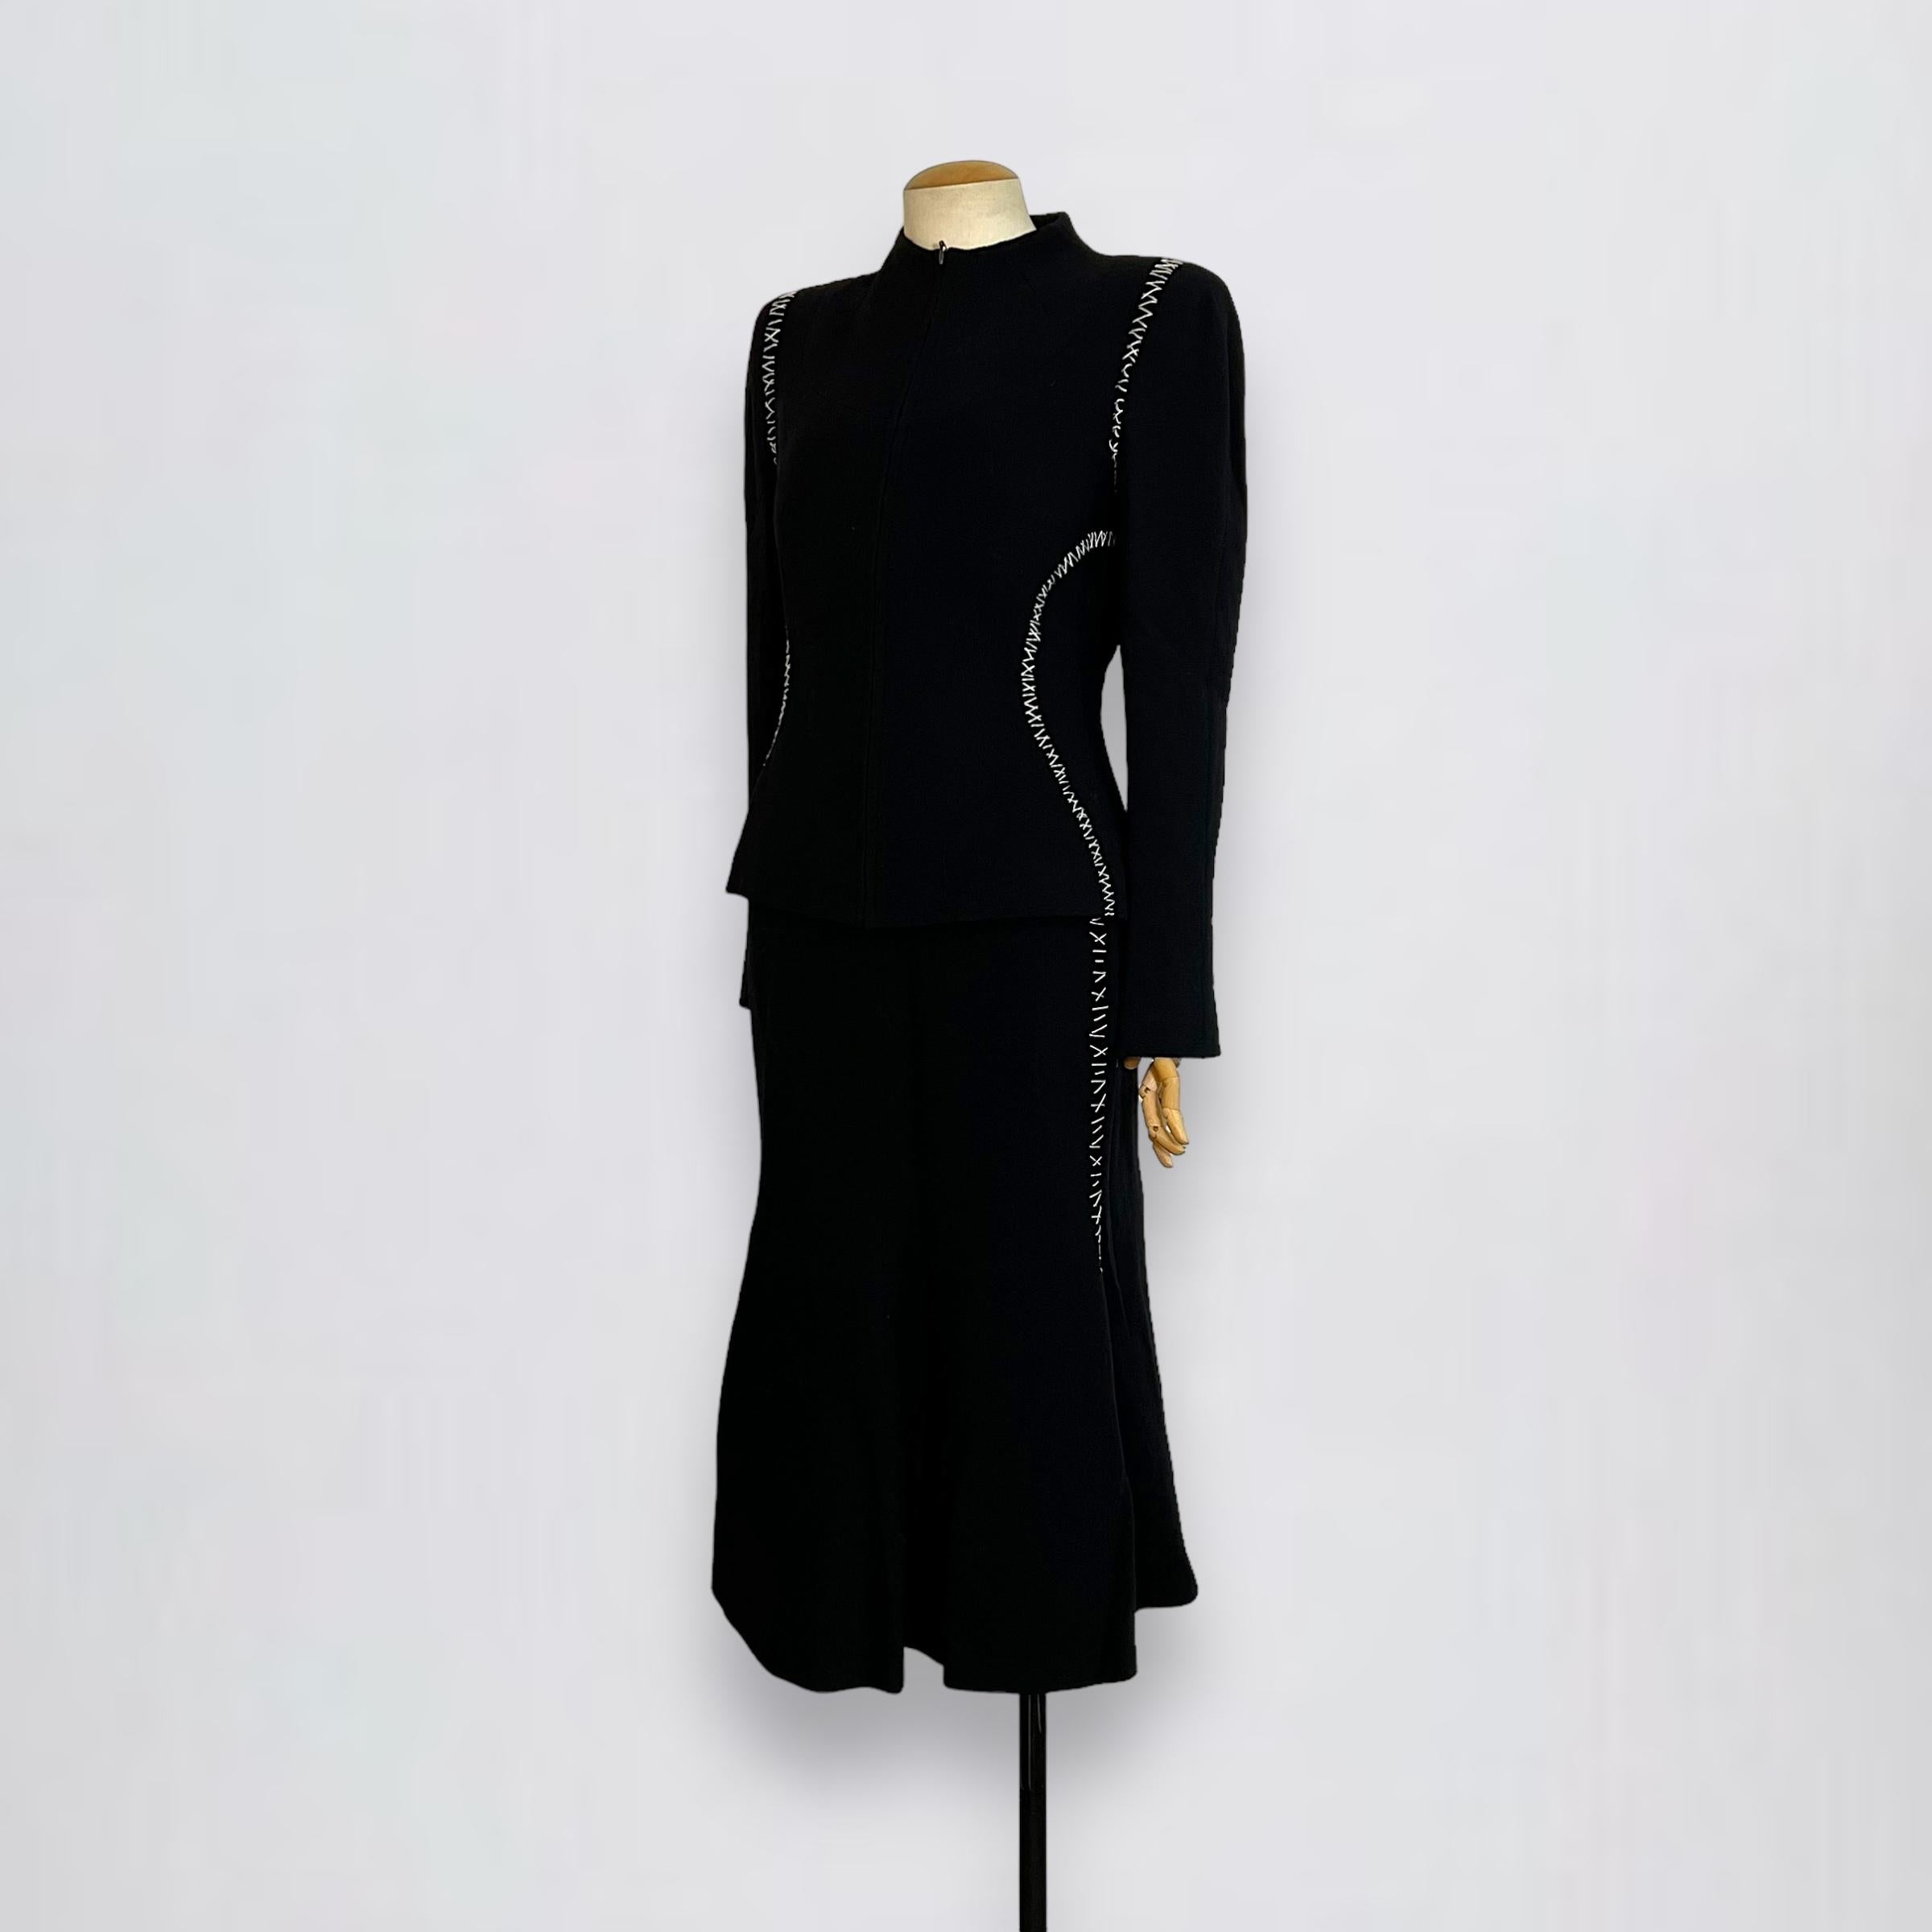 Cette veste Alexander McQueen est confectionnée en laine texturée noire, rehaussée de surpiqûres blanches distinctives pour un contraste saisissant. L'ensemble est accompagné d'une jupe assortie. Il est doté d'une fermeture à glissière sur le devant